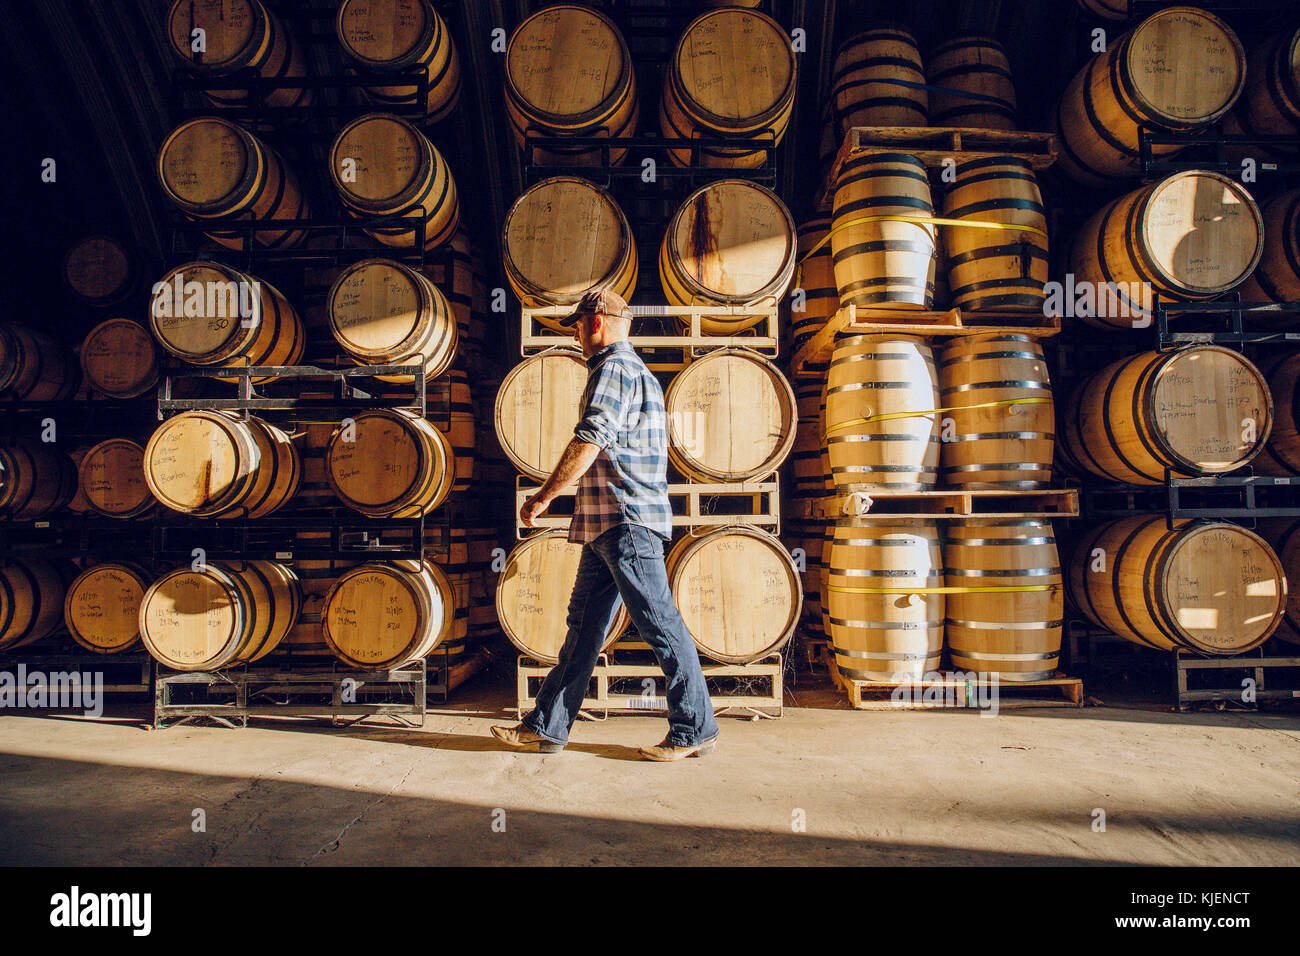 Caucasian man walking near barrels in distillery Stock Photo